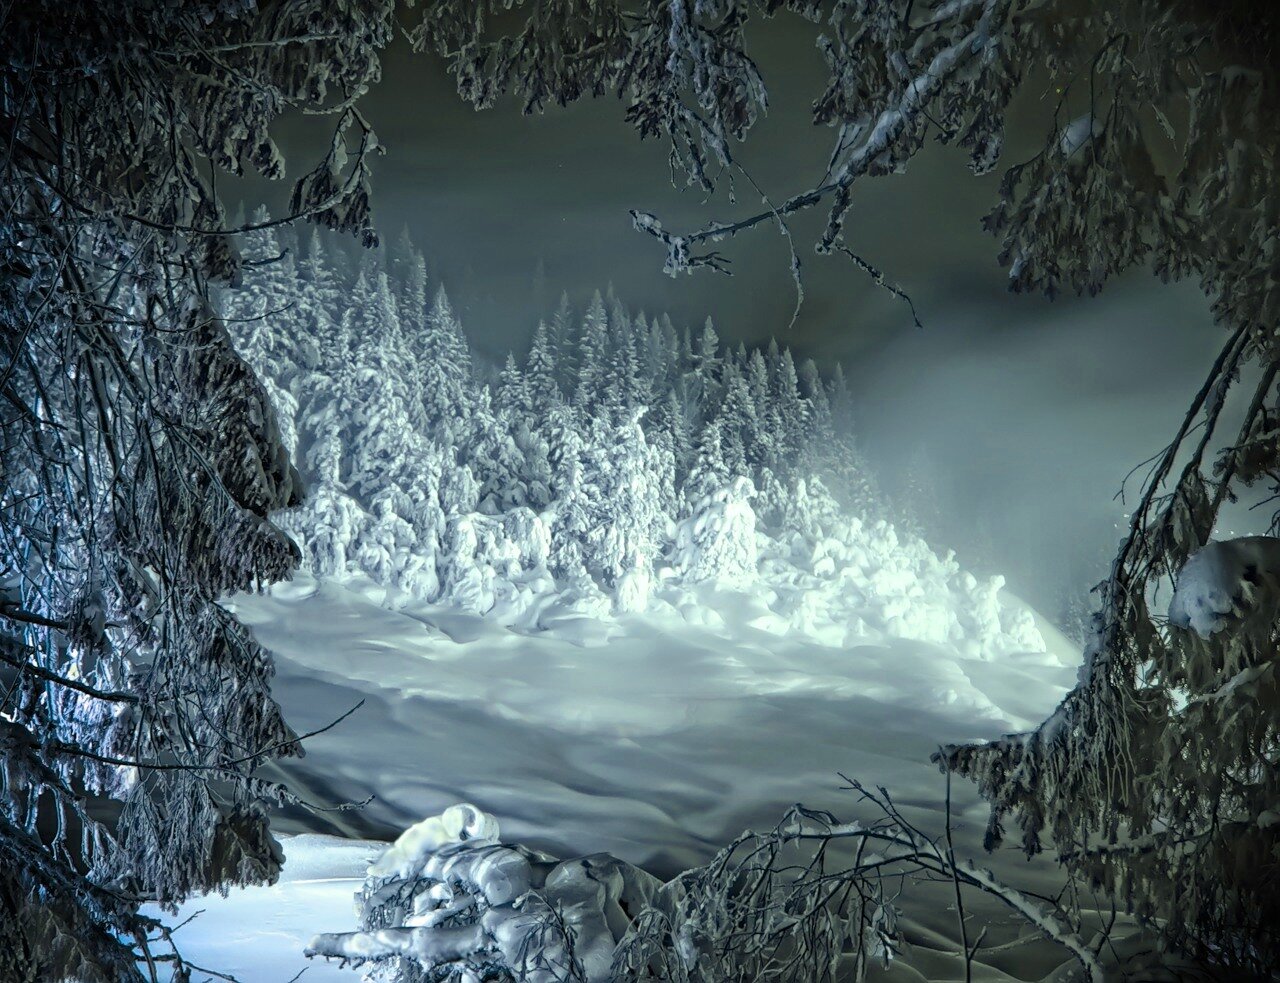 Фф и в морозном лесу навеки останусь. Сказочный зимний лес. Сказочный лес зимой. Дремучий зимний лес. Страшный зимний лес.